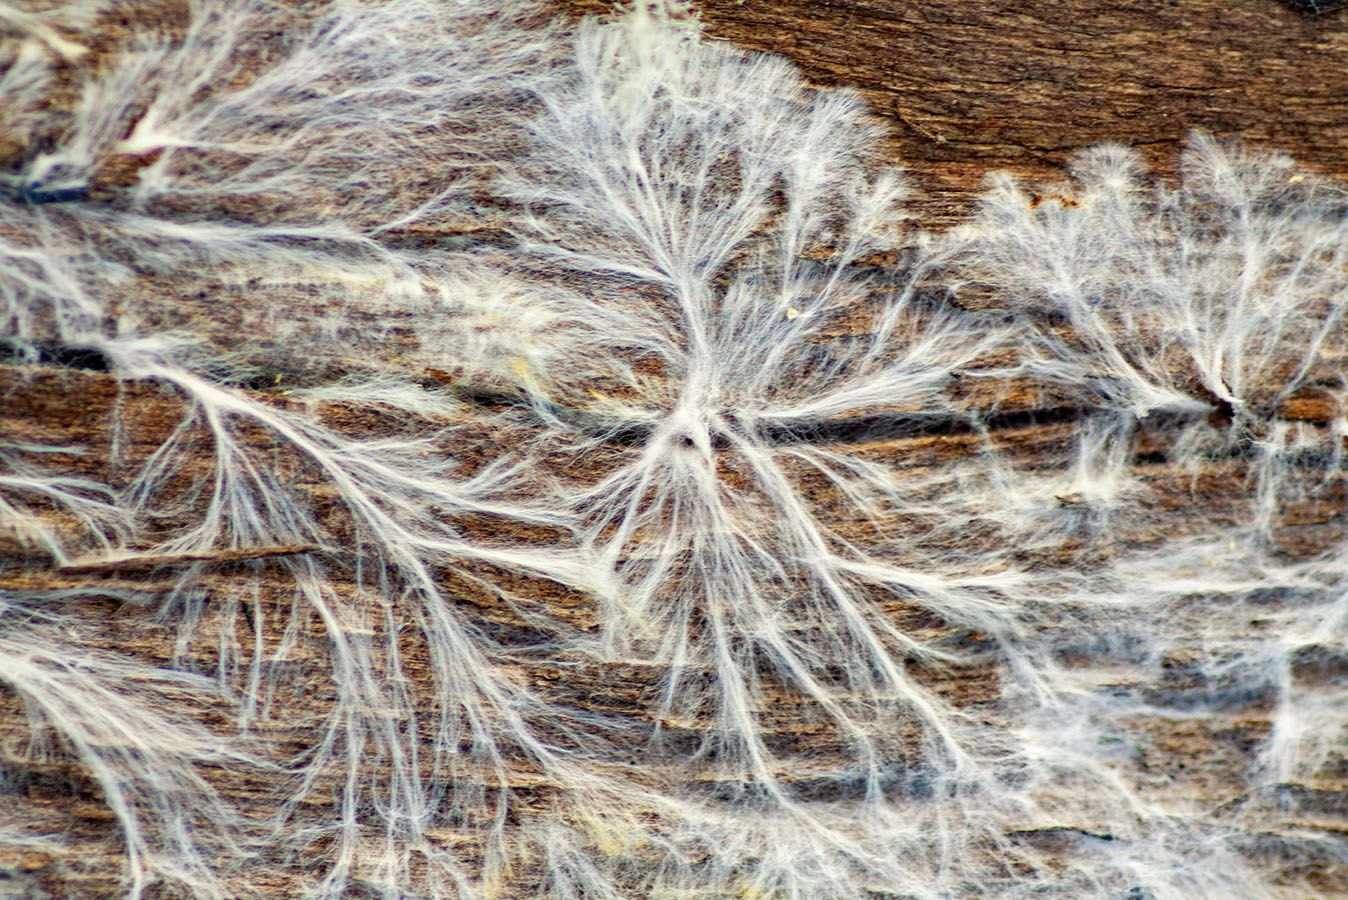 Bildergallerie - Bild 1: Weltraumaufnahme eines Nebels mit Filamentstruktur, Bild 2: Nahaufnahme eines weißen Pilzmyzels auf Holz, Bild 3: Eingefärbte Mikroskopaufnahme einer Zelle mit Mikrofilamenten, Bild 4: Netzstruktur aus weißen Fadenstrukturen